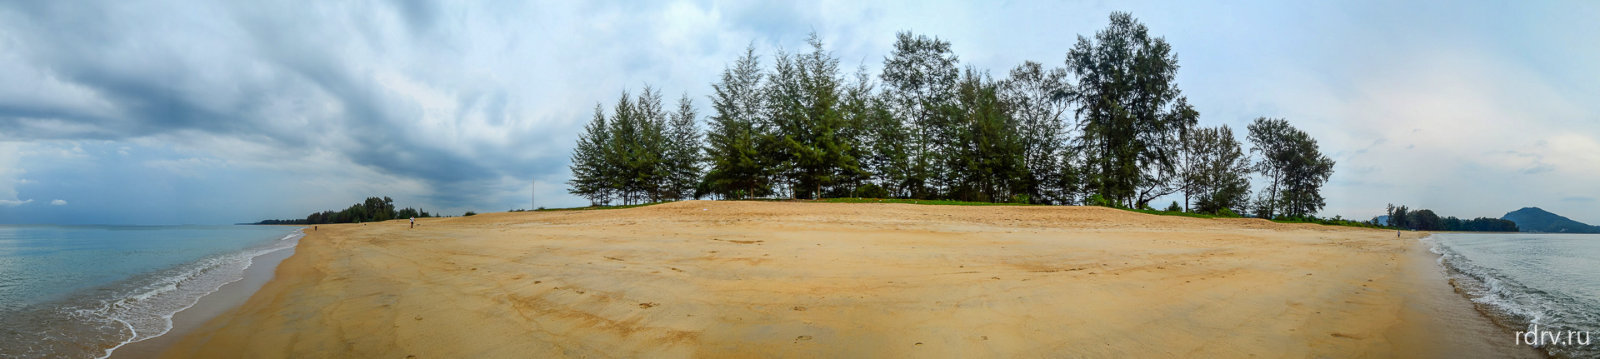 Панорама пляжа Май Као бич